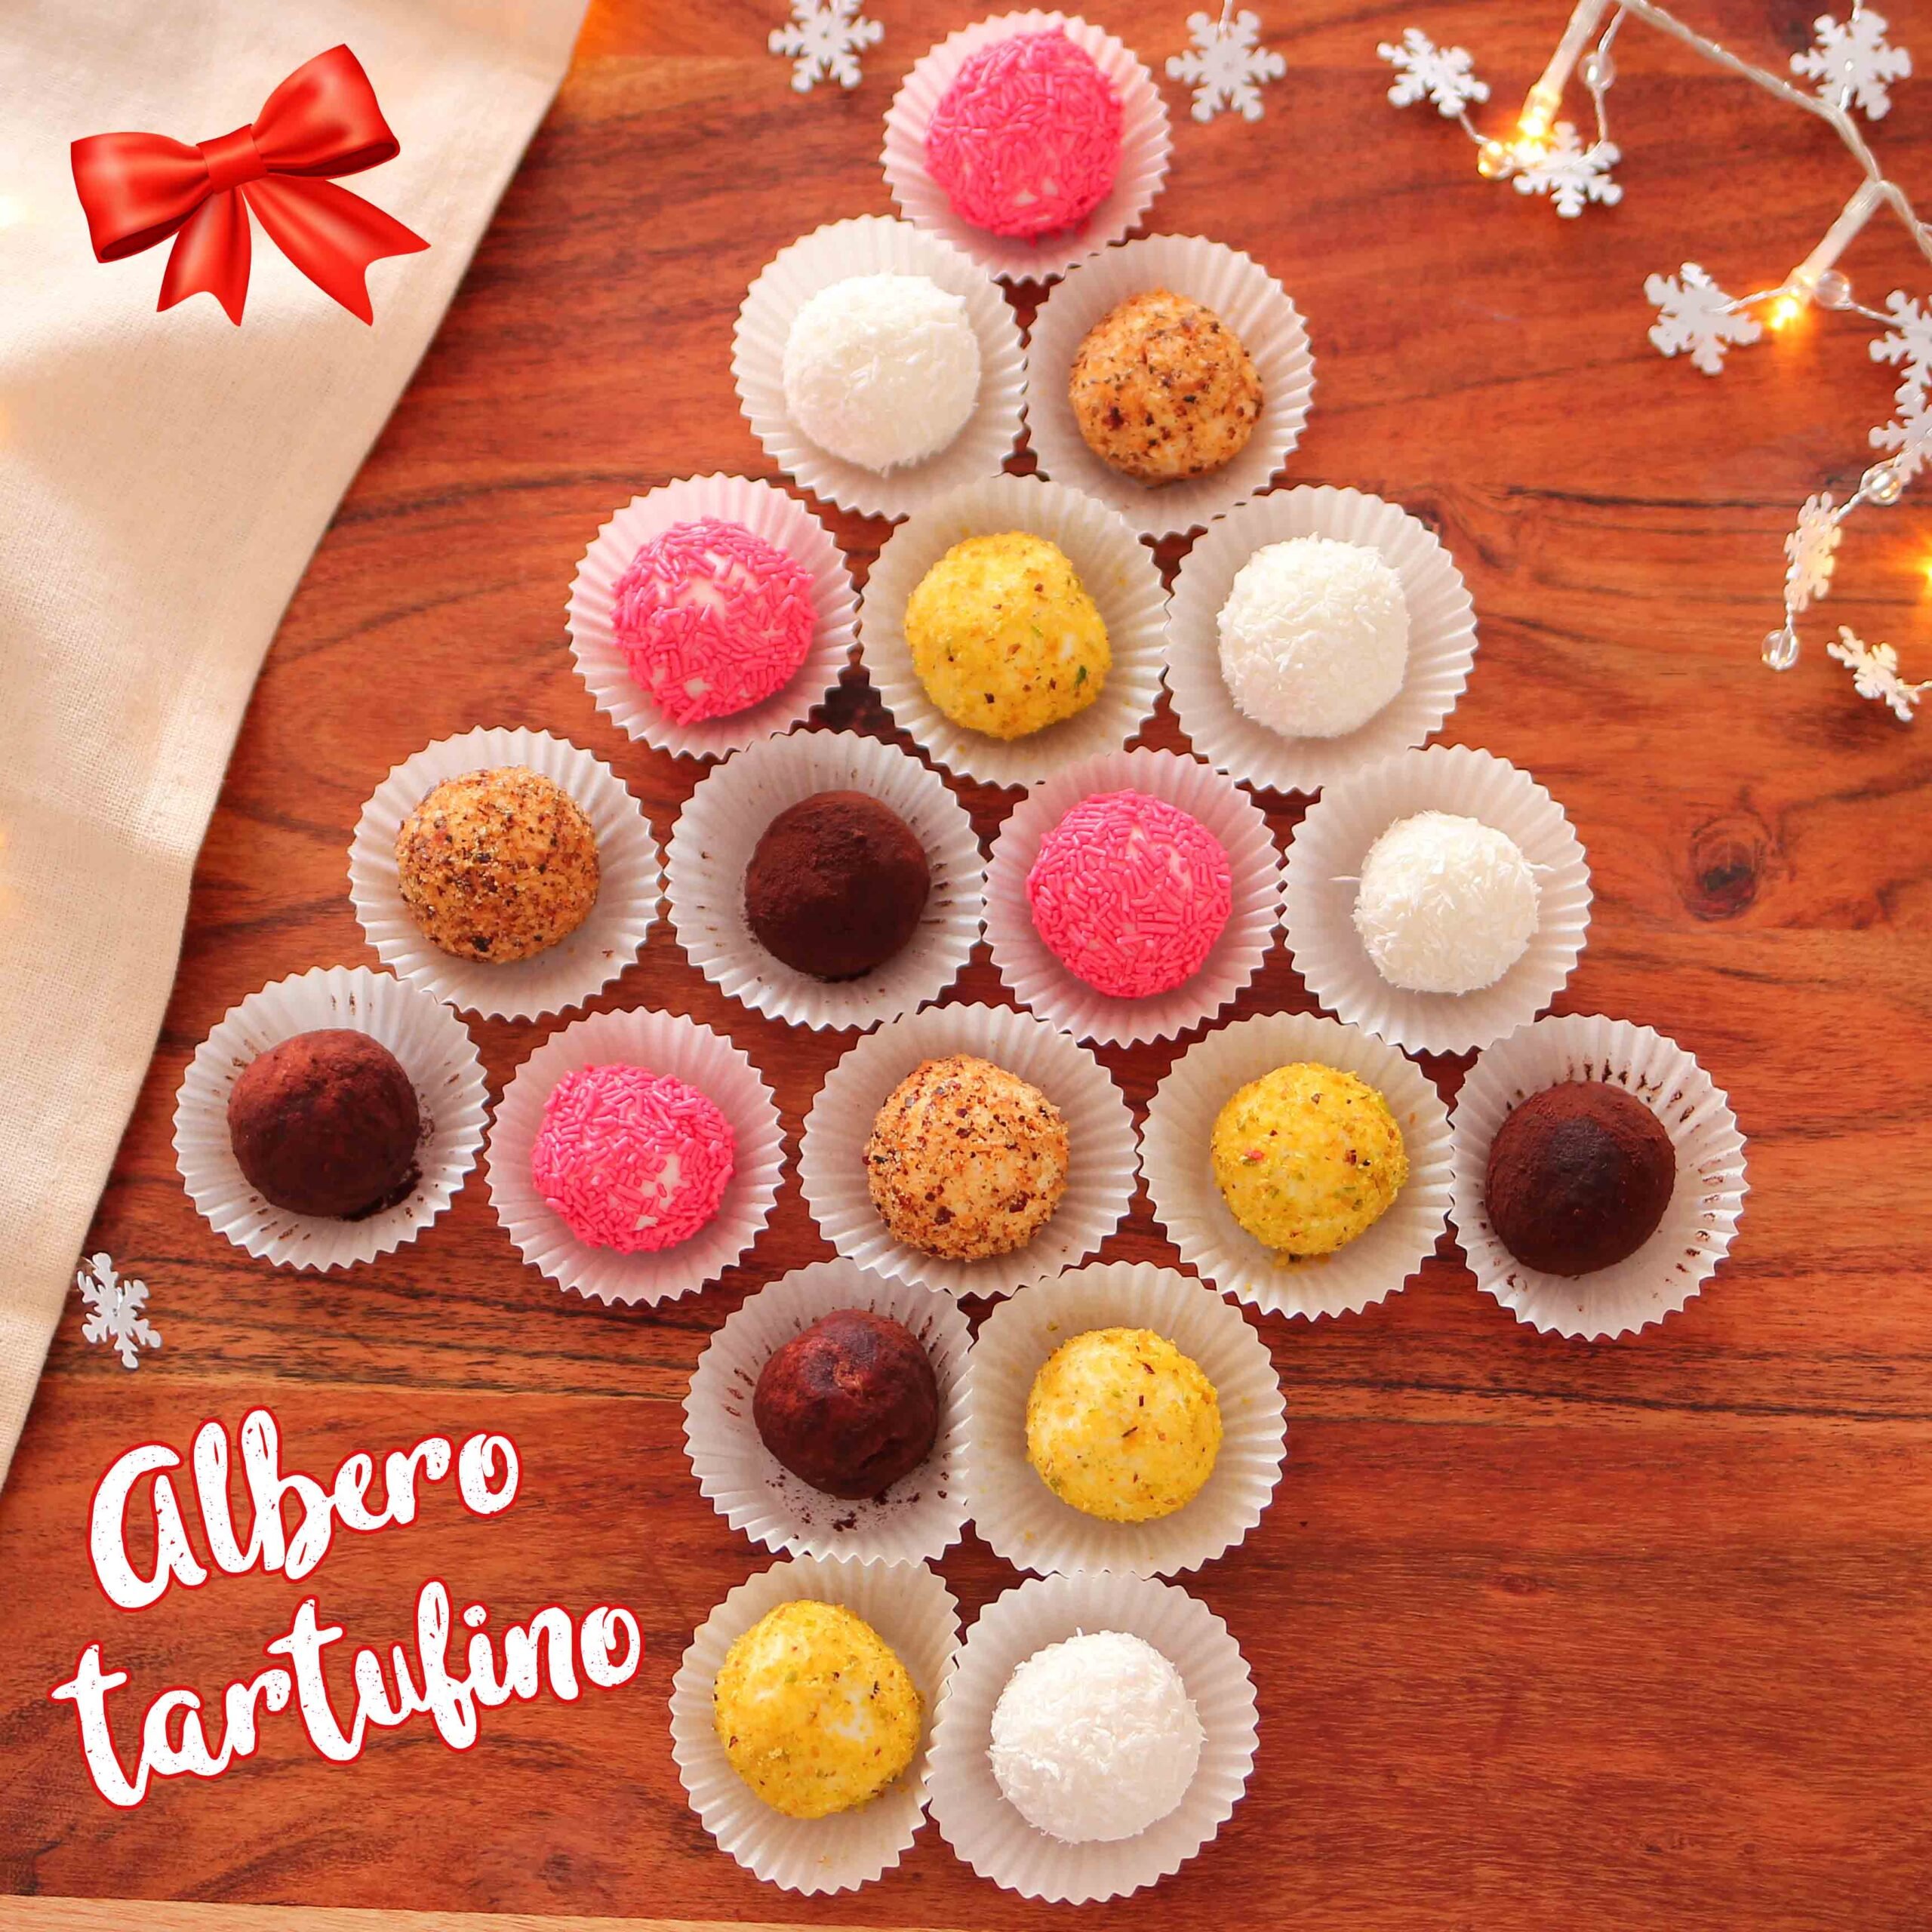 Albero tartufino – dolce di Natale - Step 5